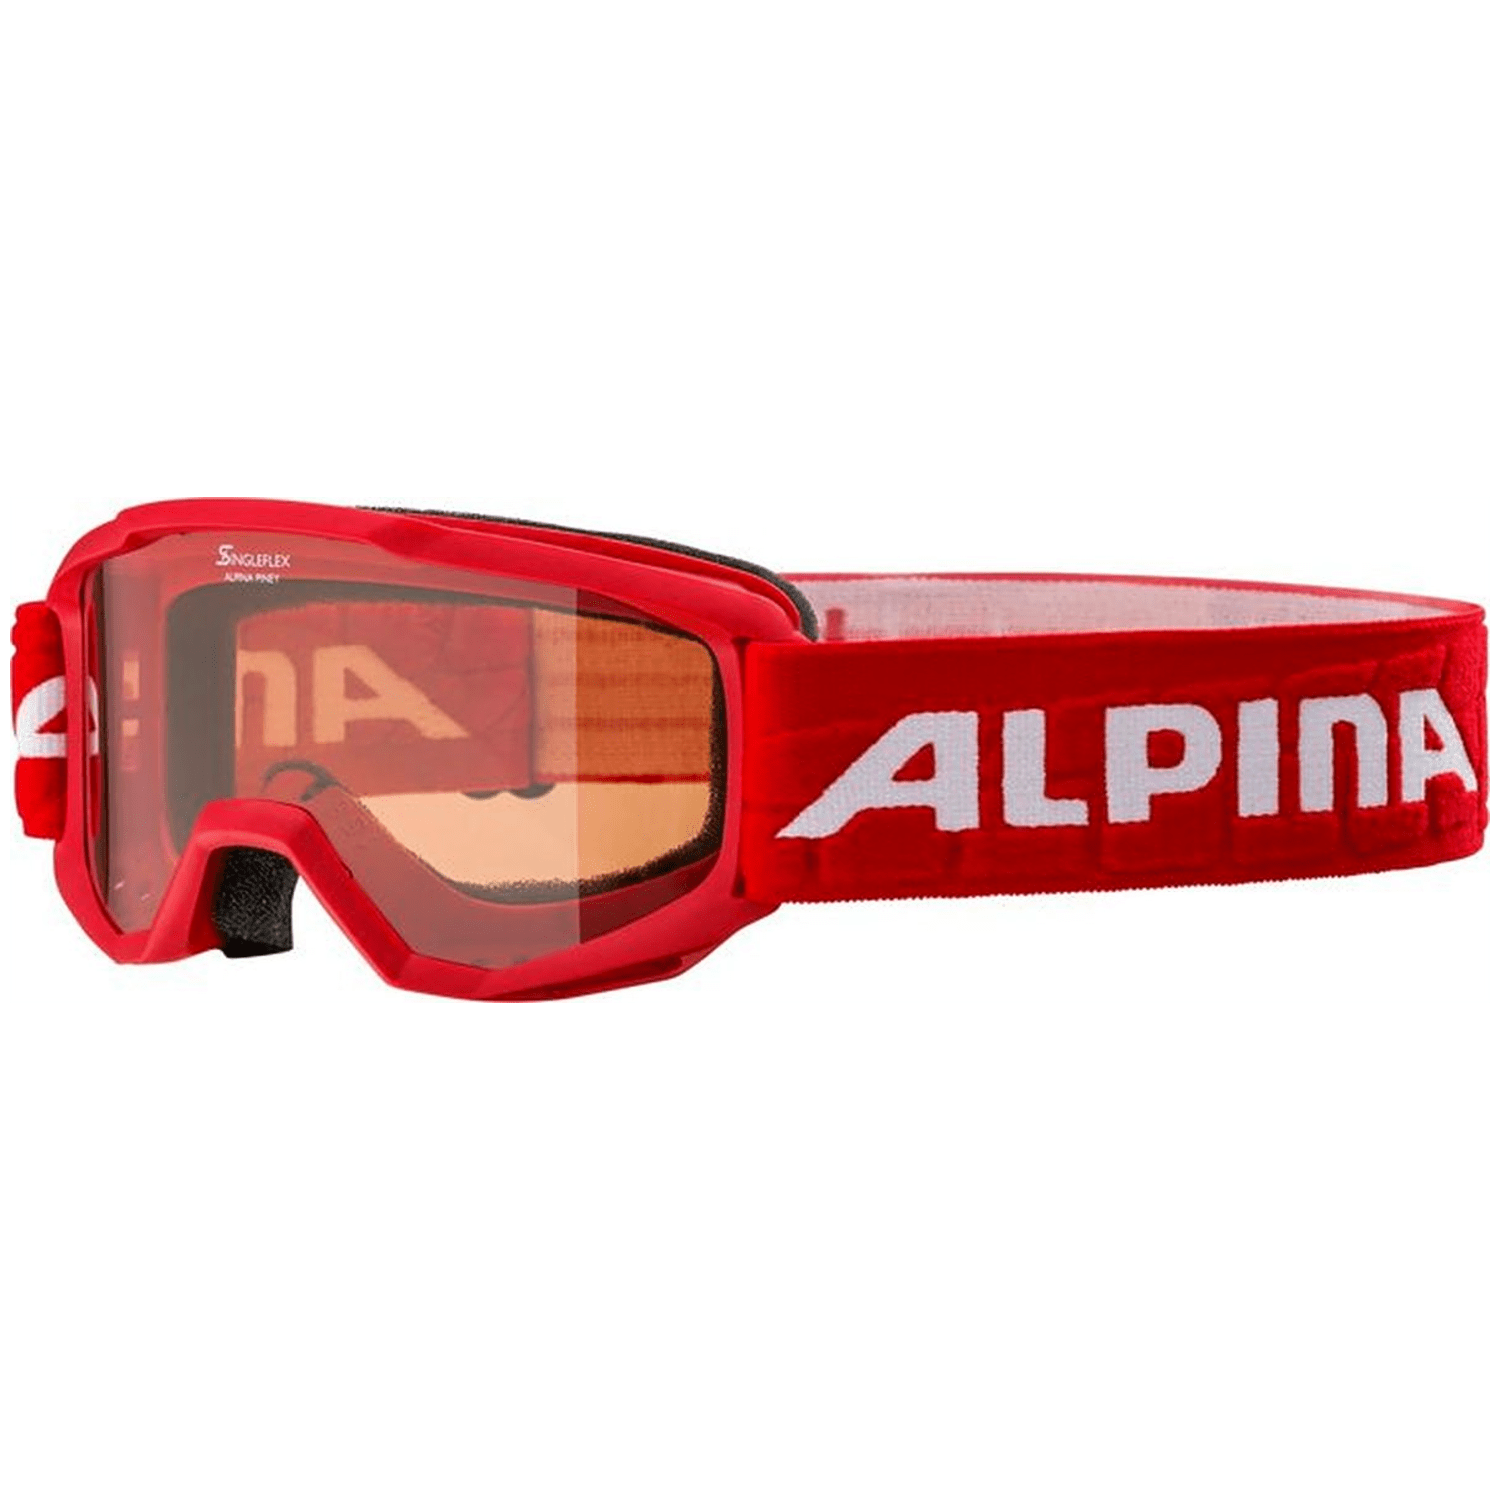 Alpina Piney Skibrille Kinder